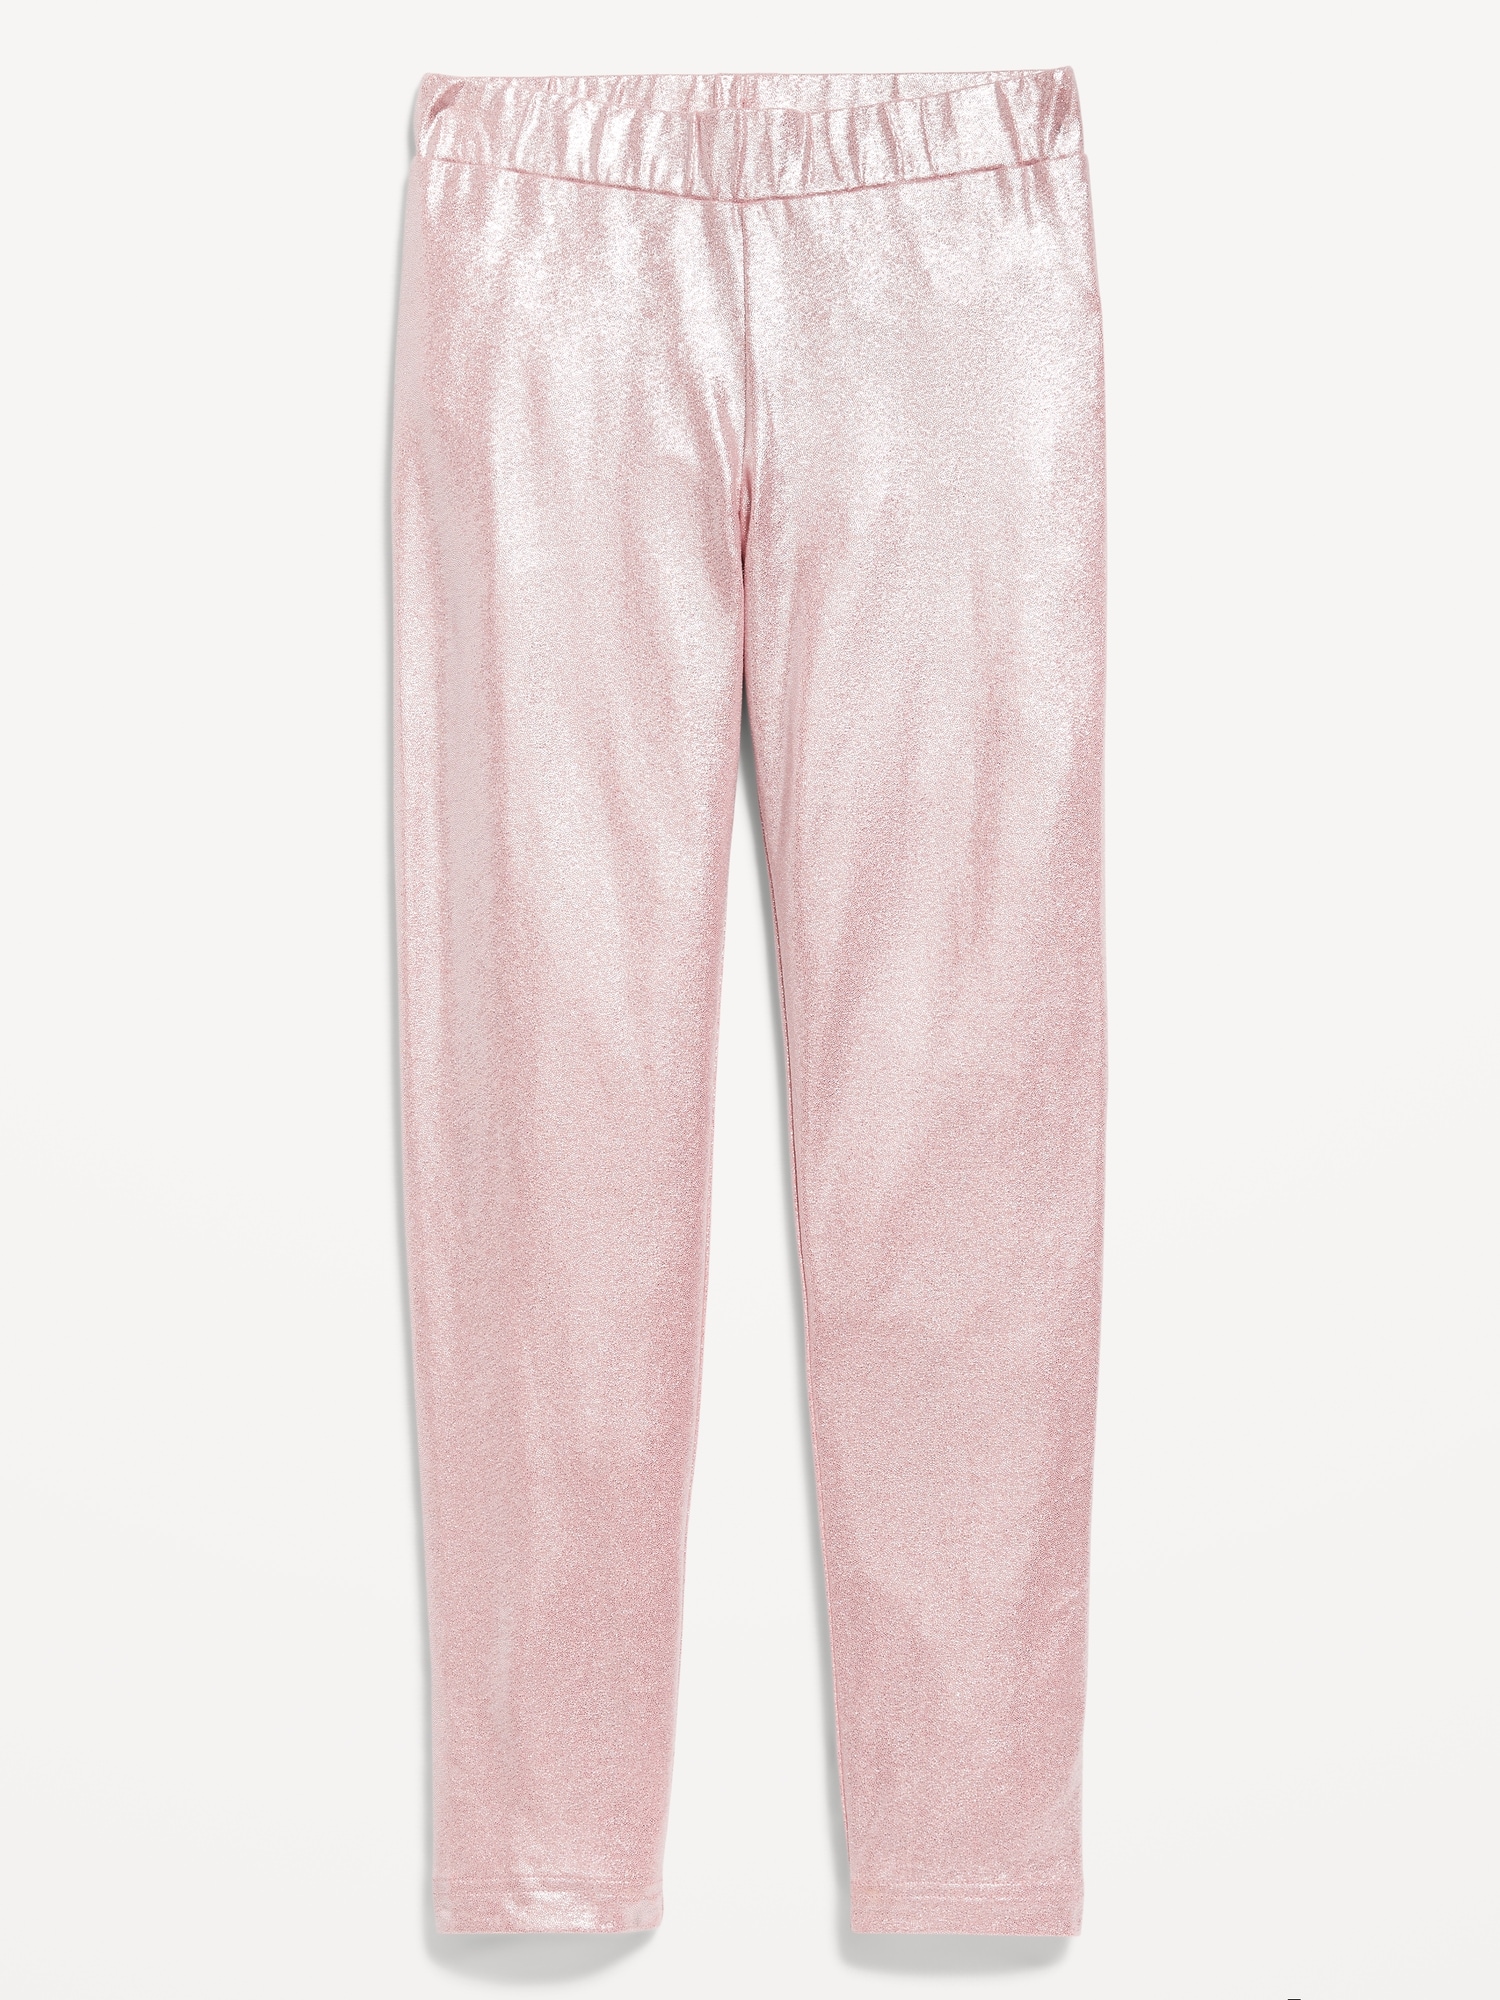 Girls Pink Shiny Metallic Leggings Pink Valentines Leggings Pants